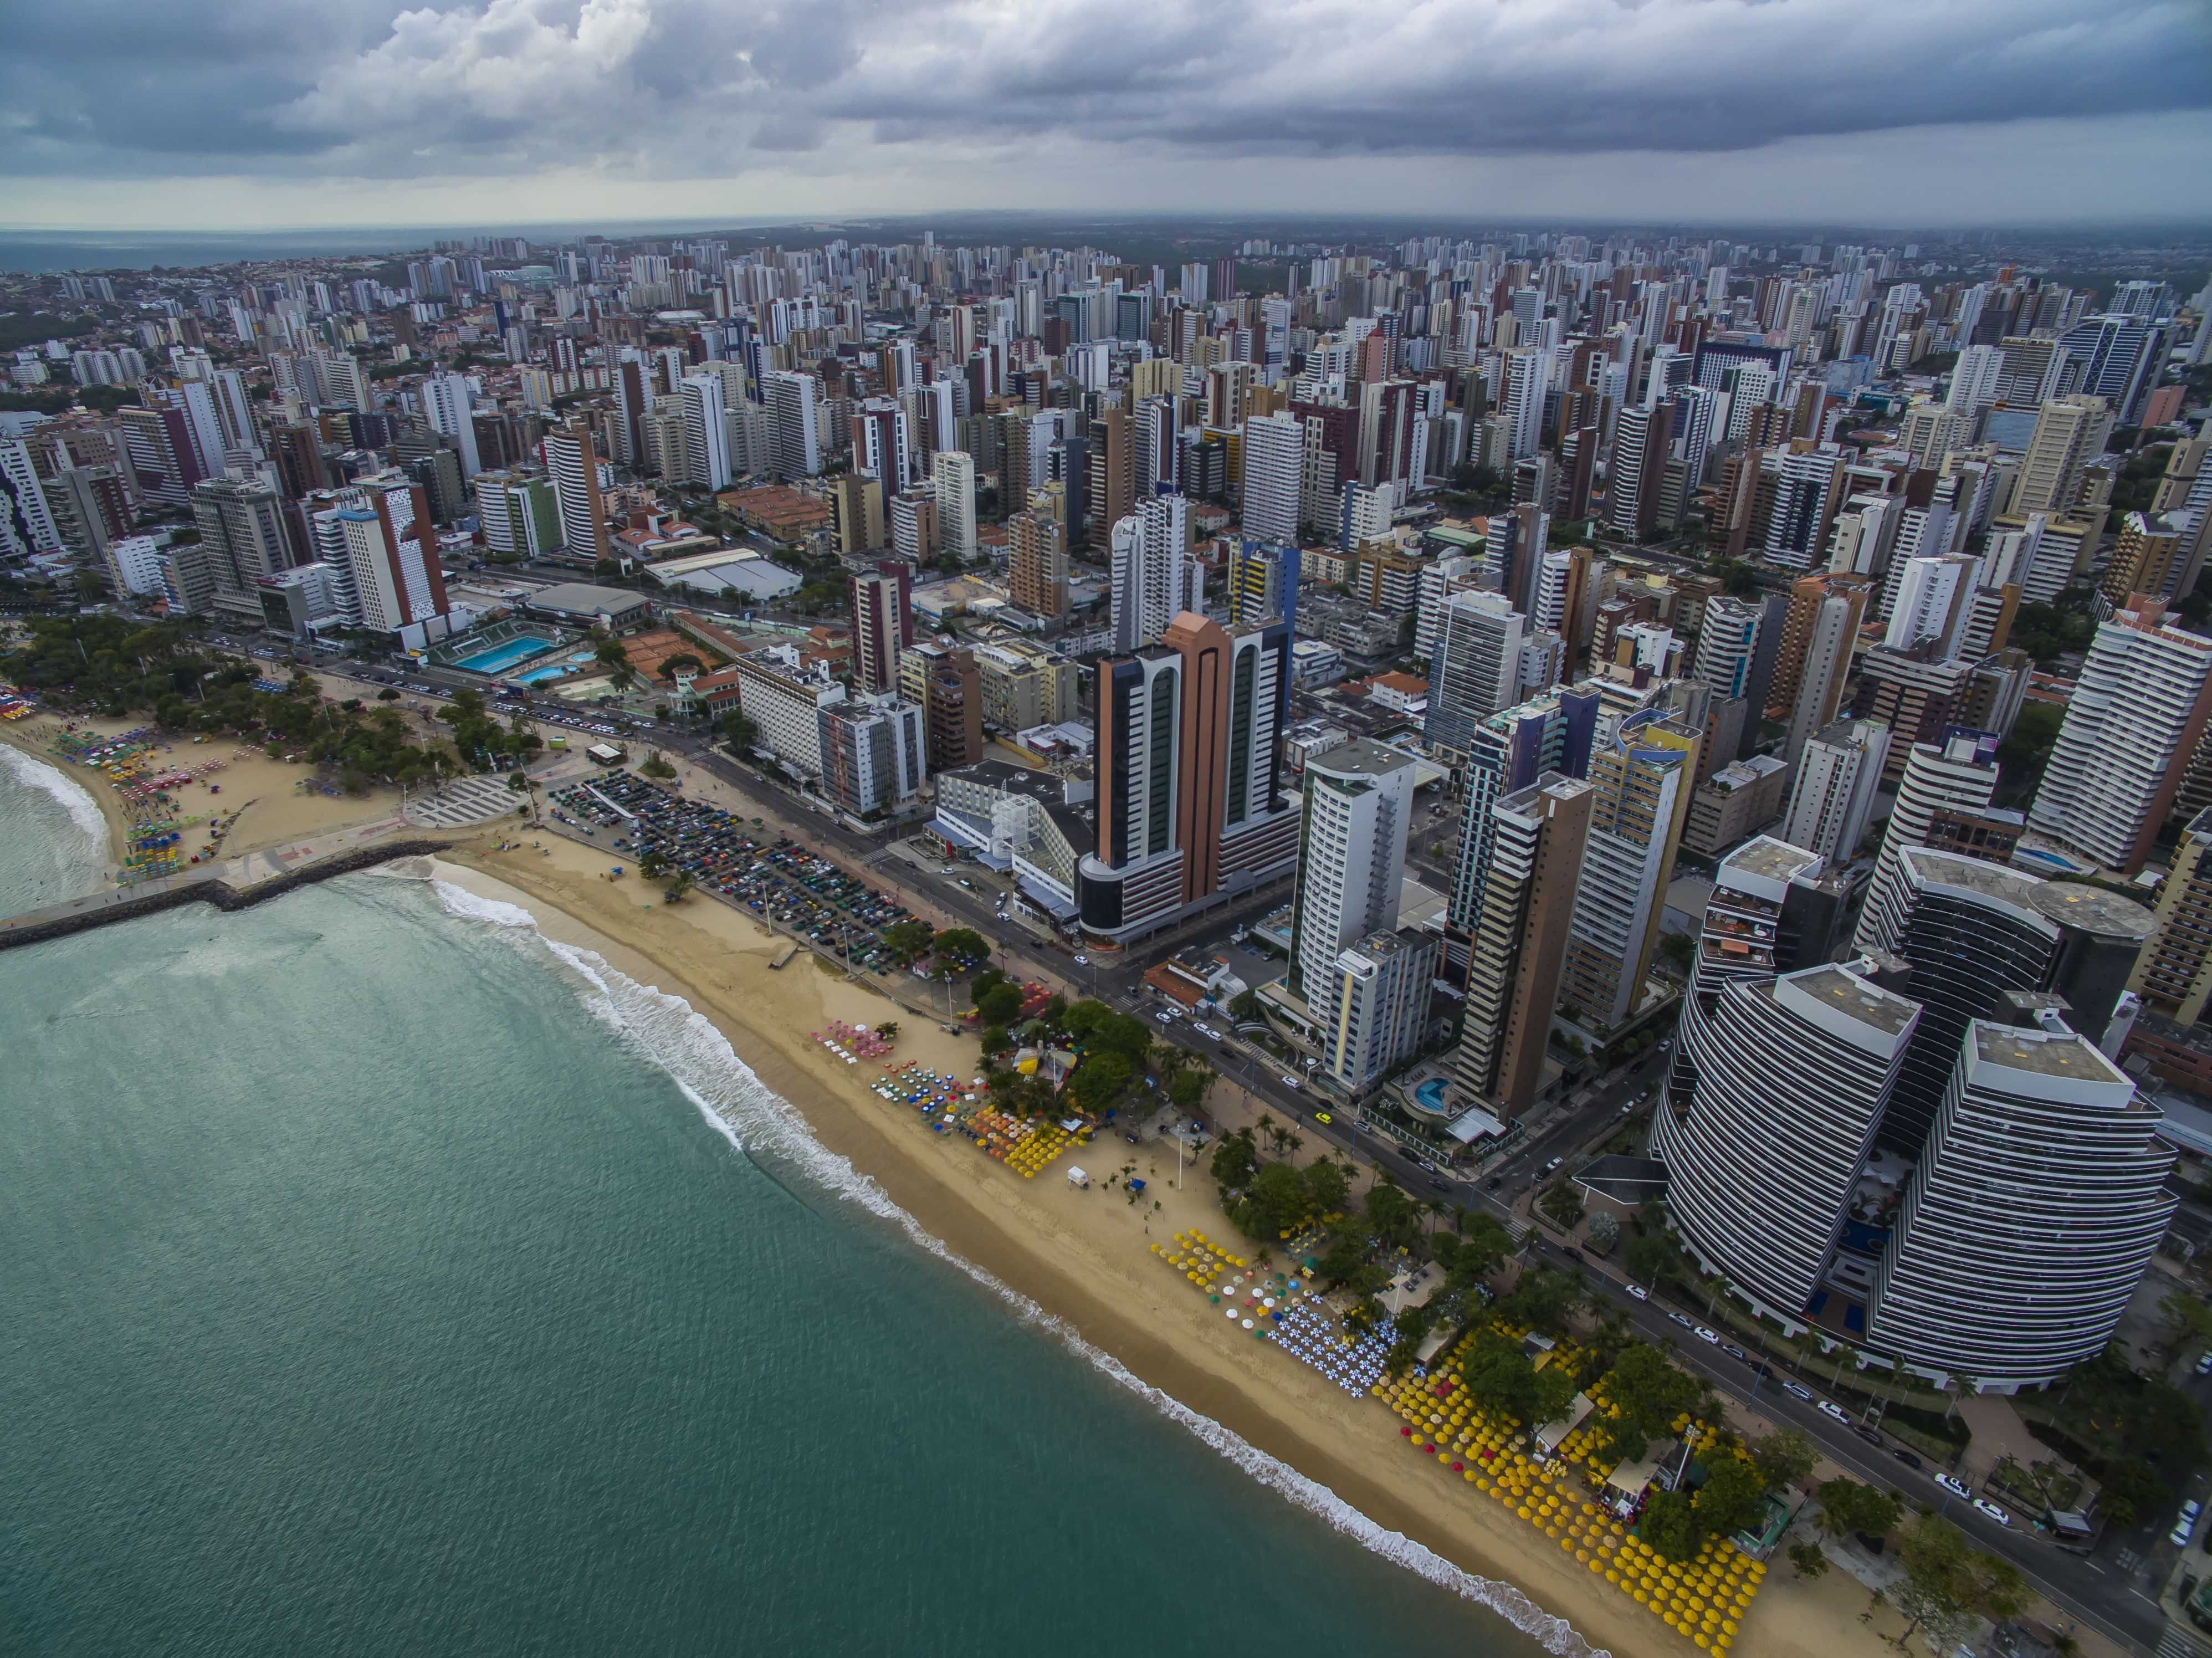  10 melhores escolas públicas de Fortaleza segundo pais, alunos e professores 